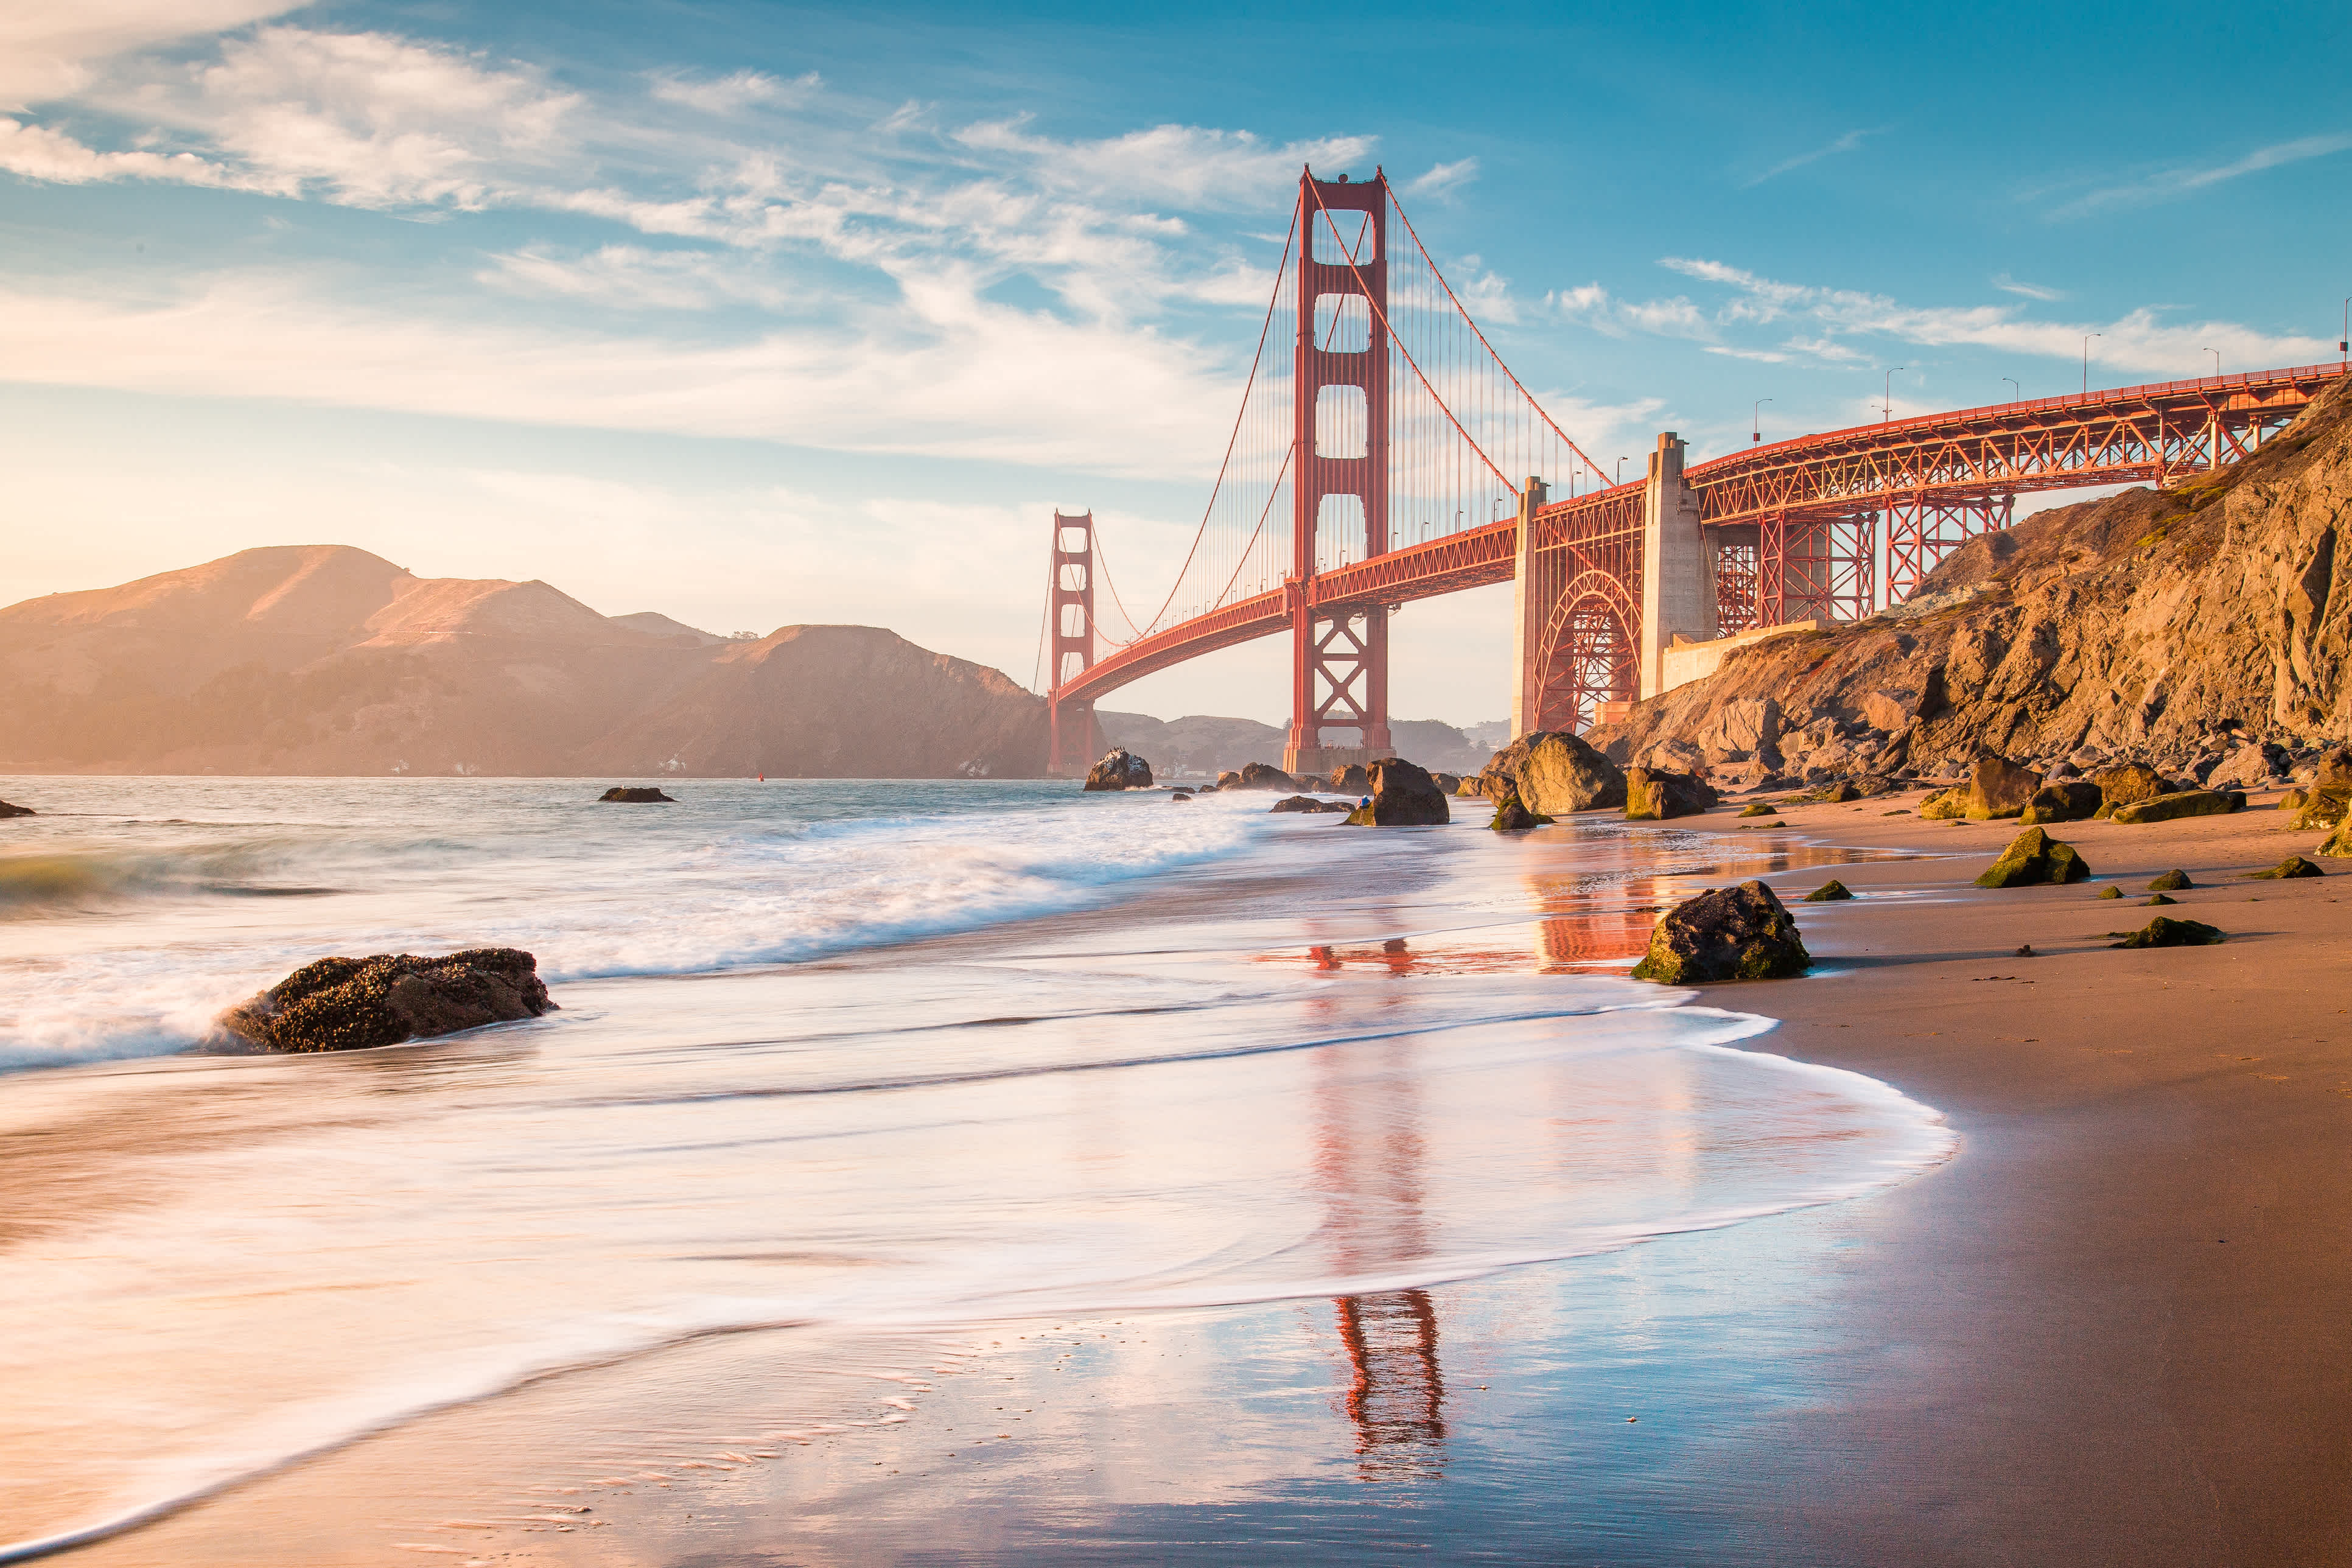 Admirez le célèbre Golden Gate Bridge de San Francisco pendant votre road trip en Californie.